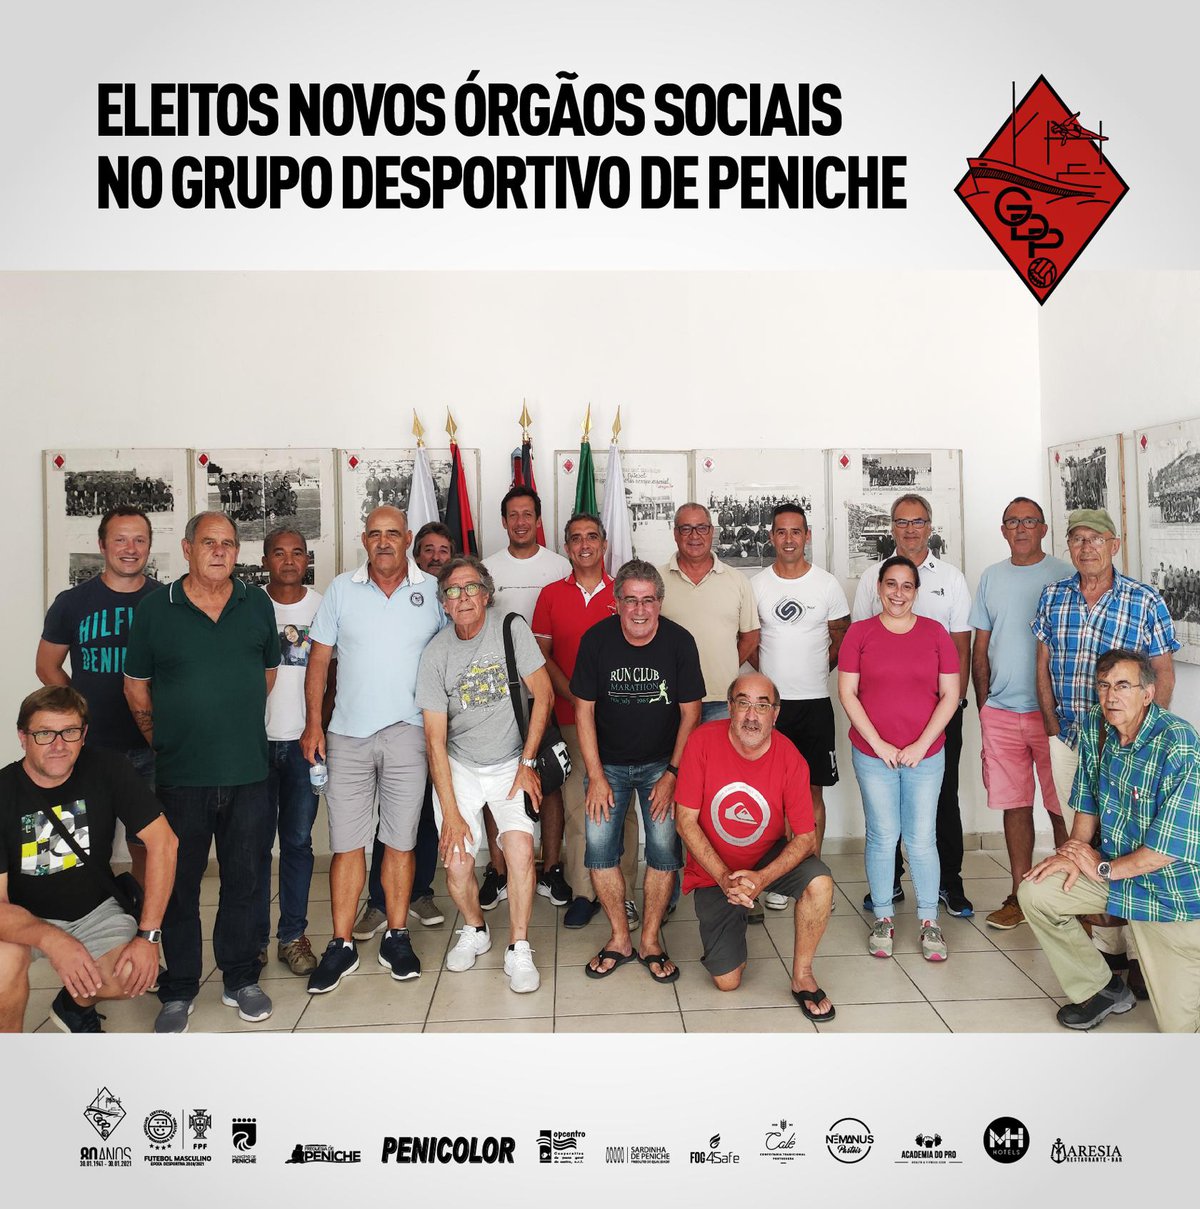 ELEITOS NOVOS ÓRGÃOS SOCIAIS NO GRUPO DESPORTIVO DE PENICHE